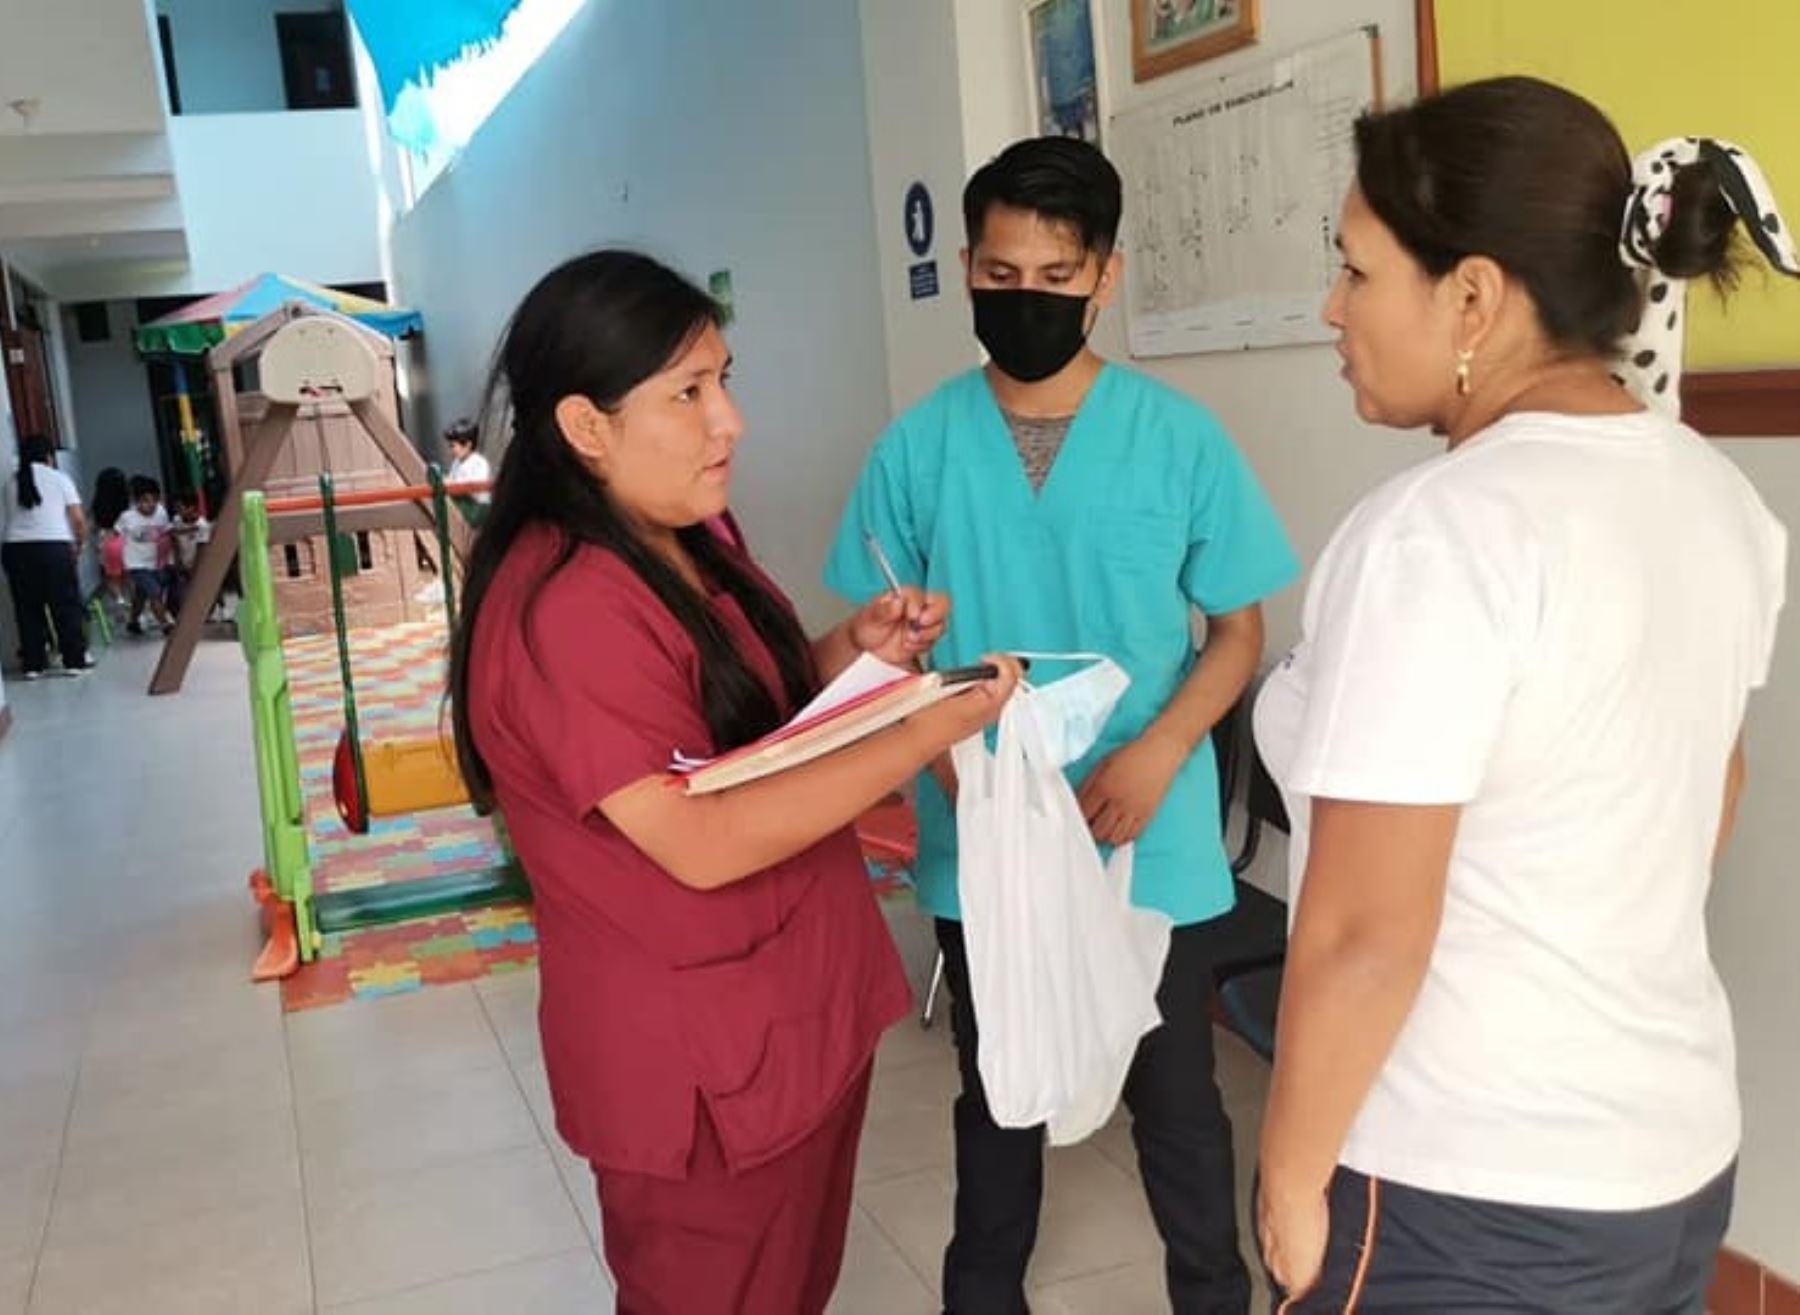 La Red de Salud Pacífico Sur activó un cerco epidemiológico en distrito de Nuevo Chimbote, en Áncash, tras reportarse dos casos importados de dengue. ANDINA/Difusión